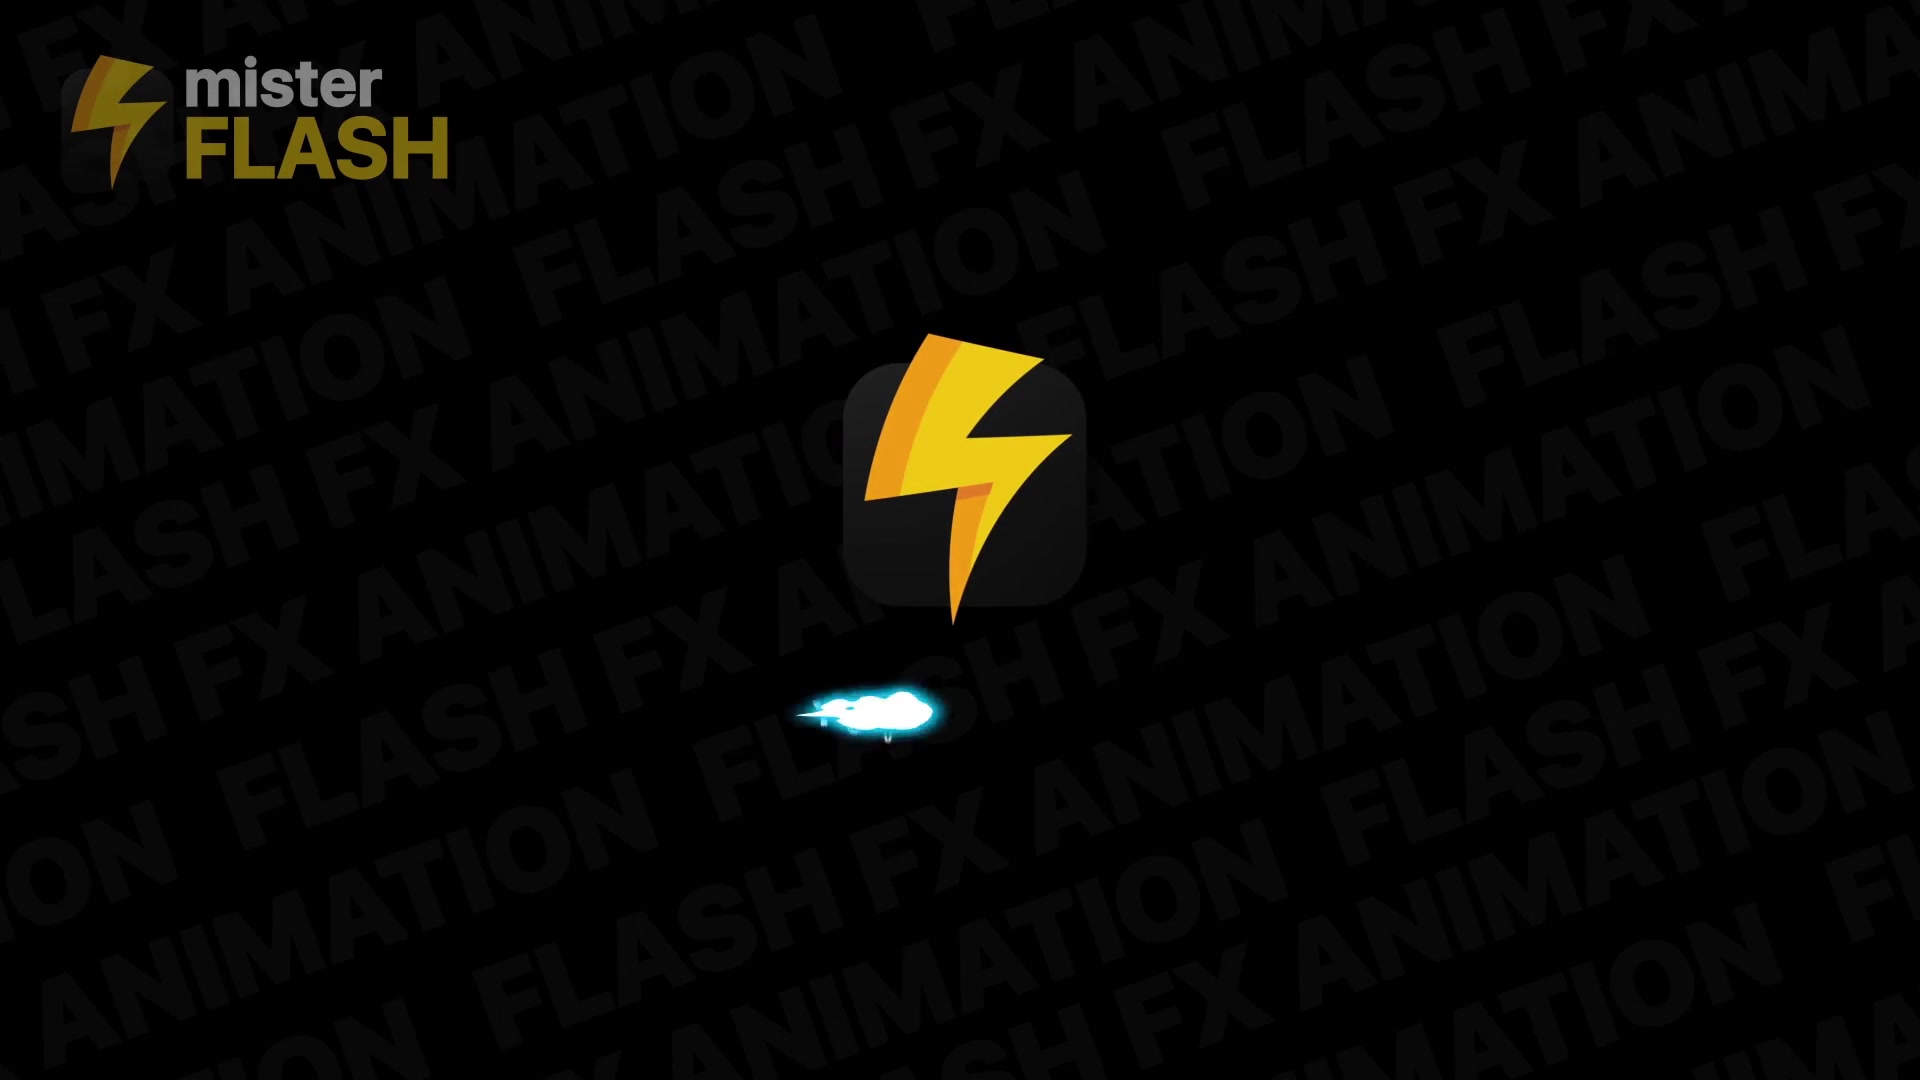 Flash FX Elements Pack 07 | Premiere Pro MOGRT Videohive 26203458 Premiere Pro Image 6